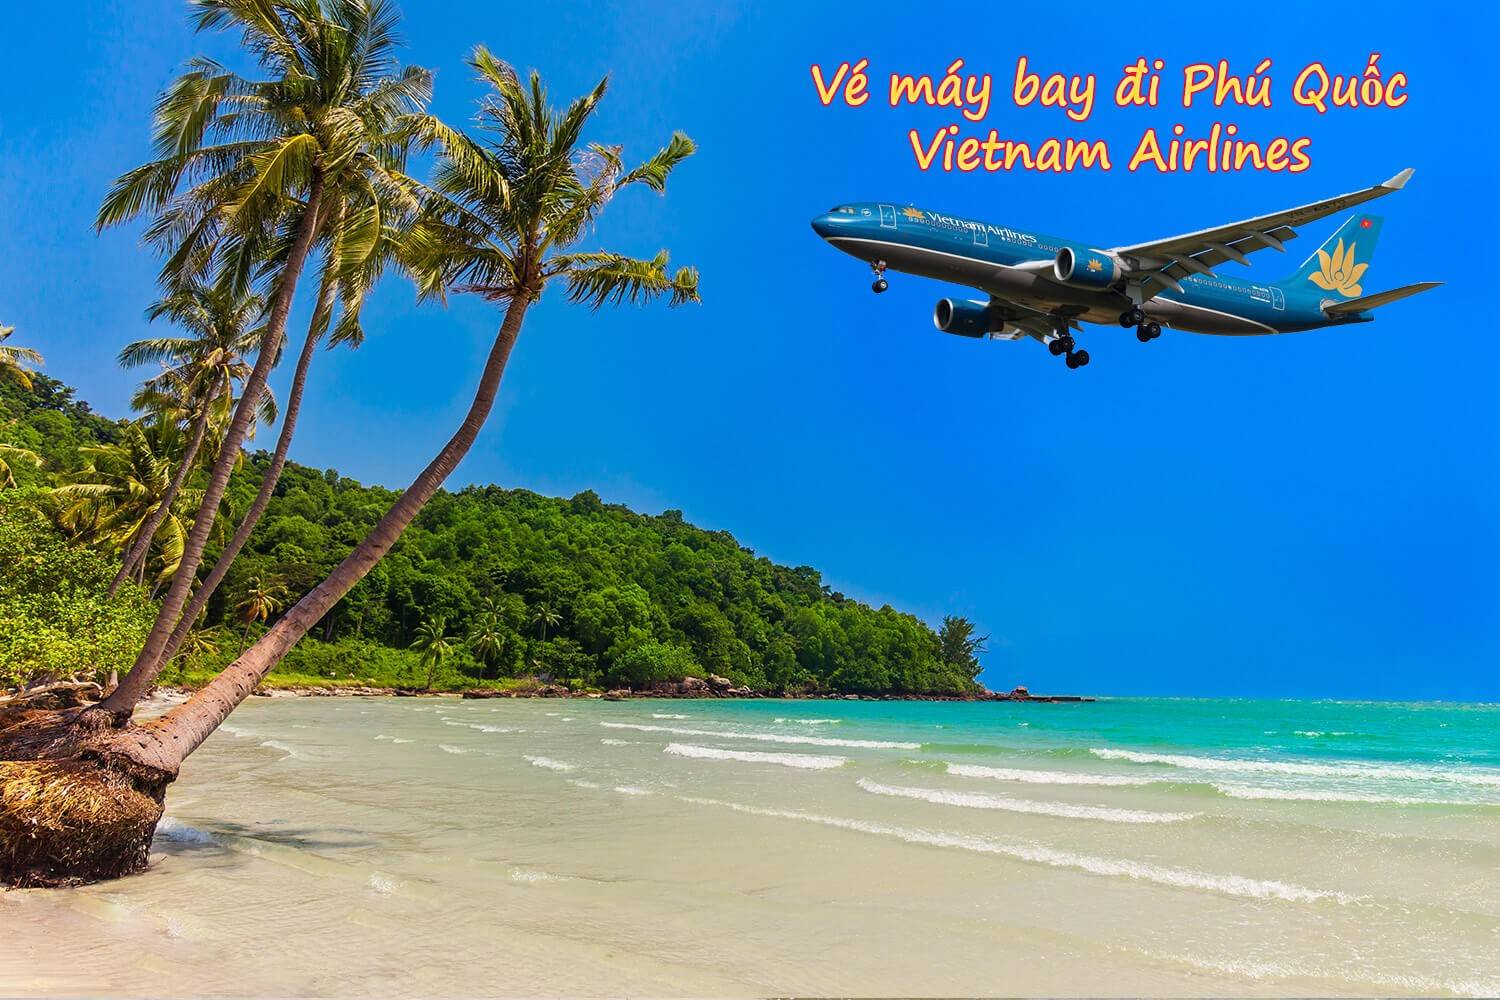 Vé máy bay đi Phú Quốc của Vietnam Airline cung cấp nhiều chuyến bay mỗi ngày với nhiều ưu đãi giá vé hấp dẫn.